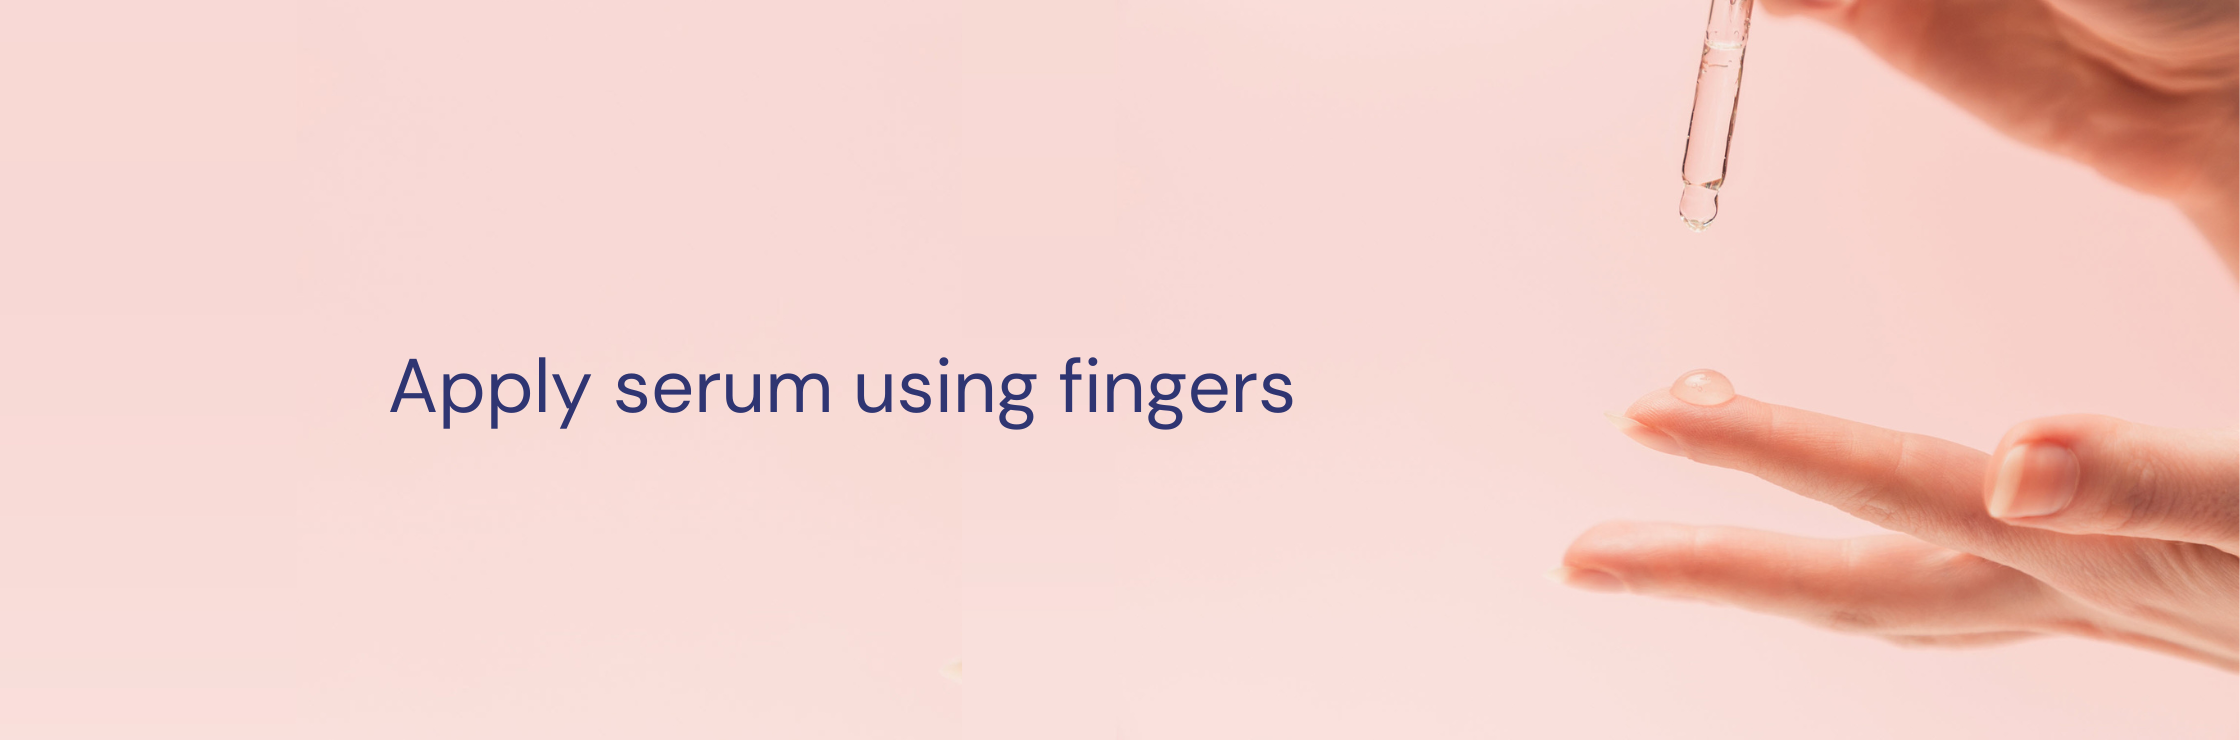 finger application for serum